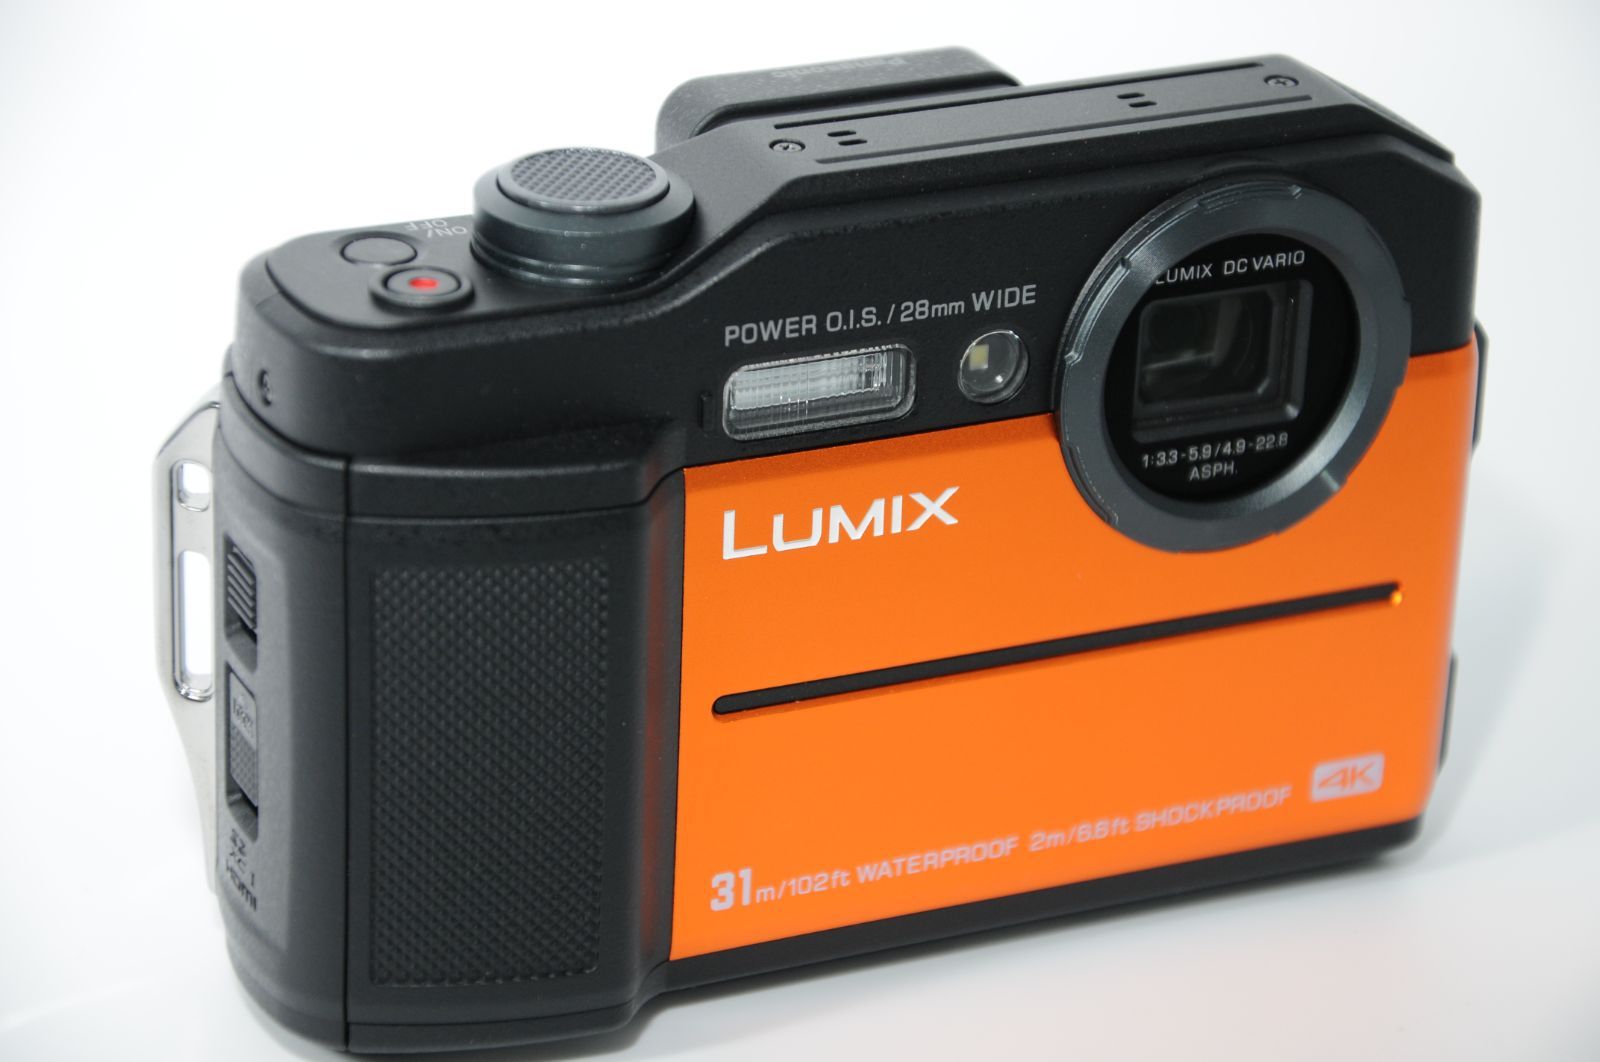 パナソニック コンパクトデジタルカメラ ルミックス FT7 防水 4K動画対応 オレンジ DC-FT7-D